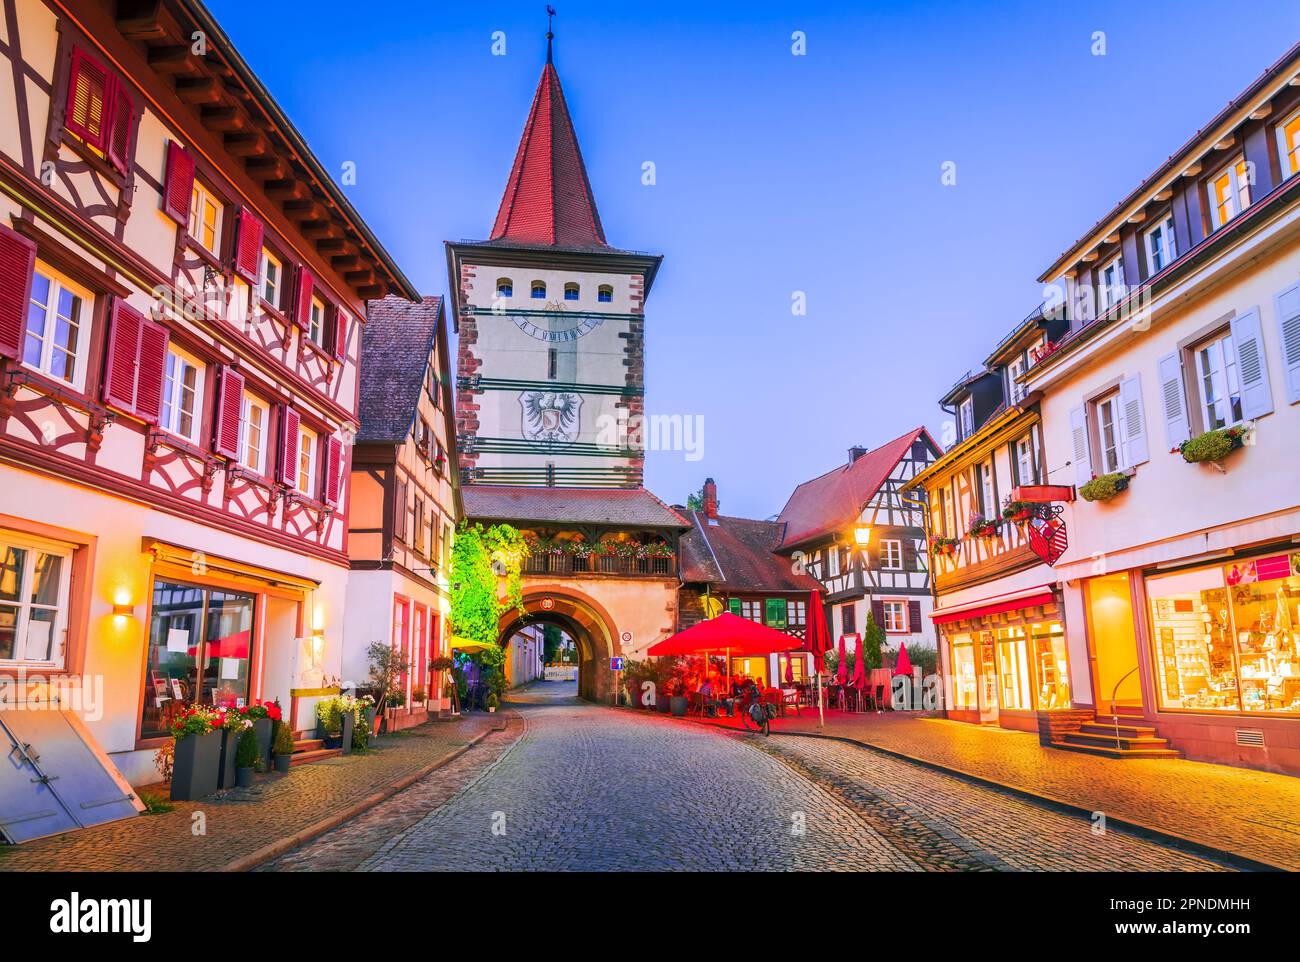 Gengenbach est une ville pittoresque de la région de la Forêt-Noire en Allemagne, connue pour ses bâtiments historiques bien conservés et ses charmants pavés Banque D'Images